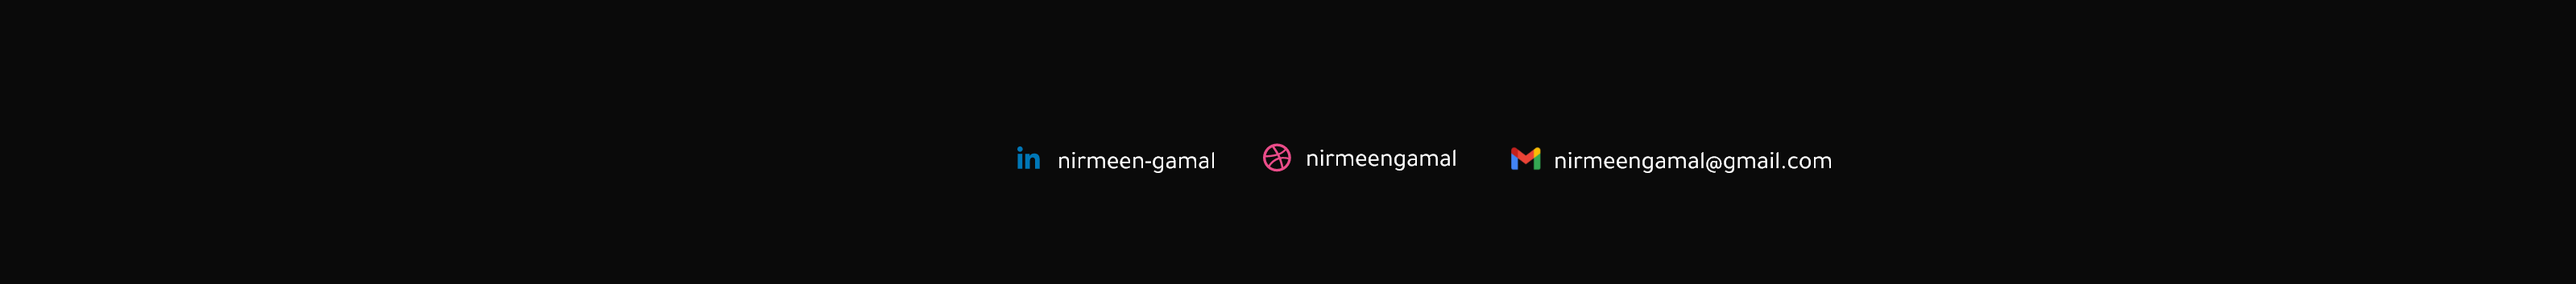 Nirmeen Gamal's profile banner